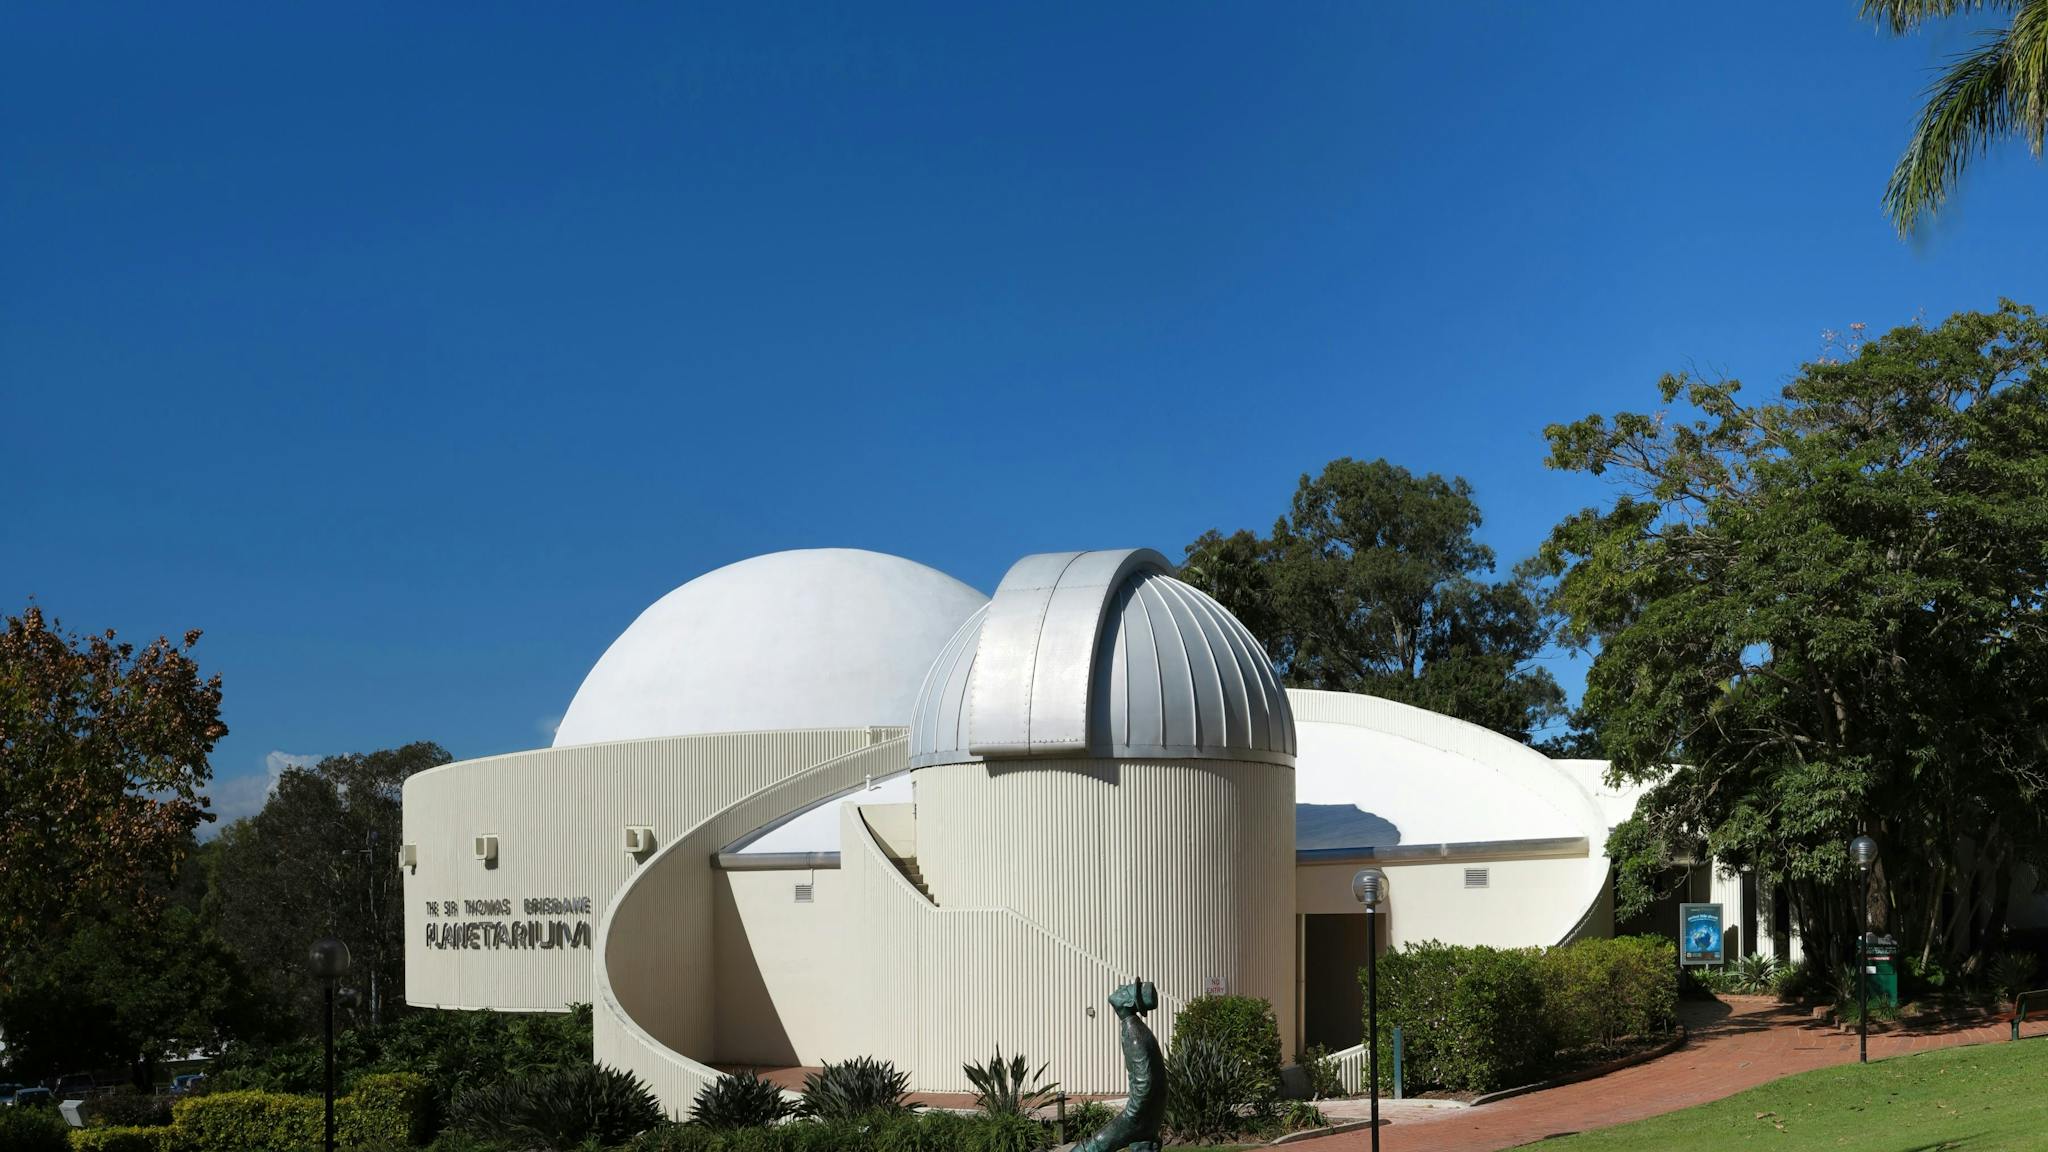 Planetarium buildings from northwest